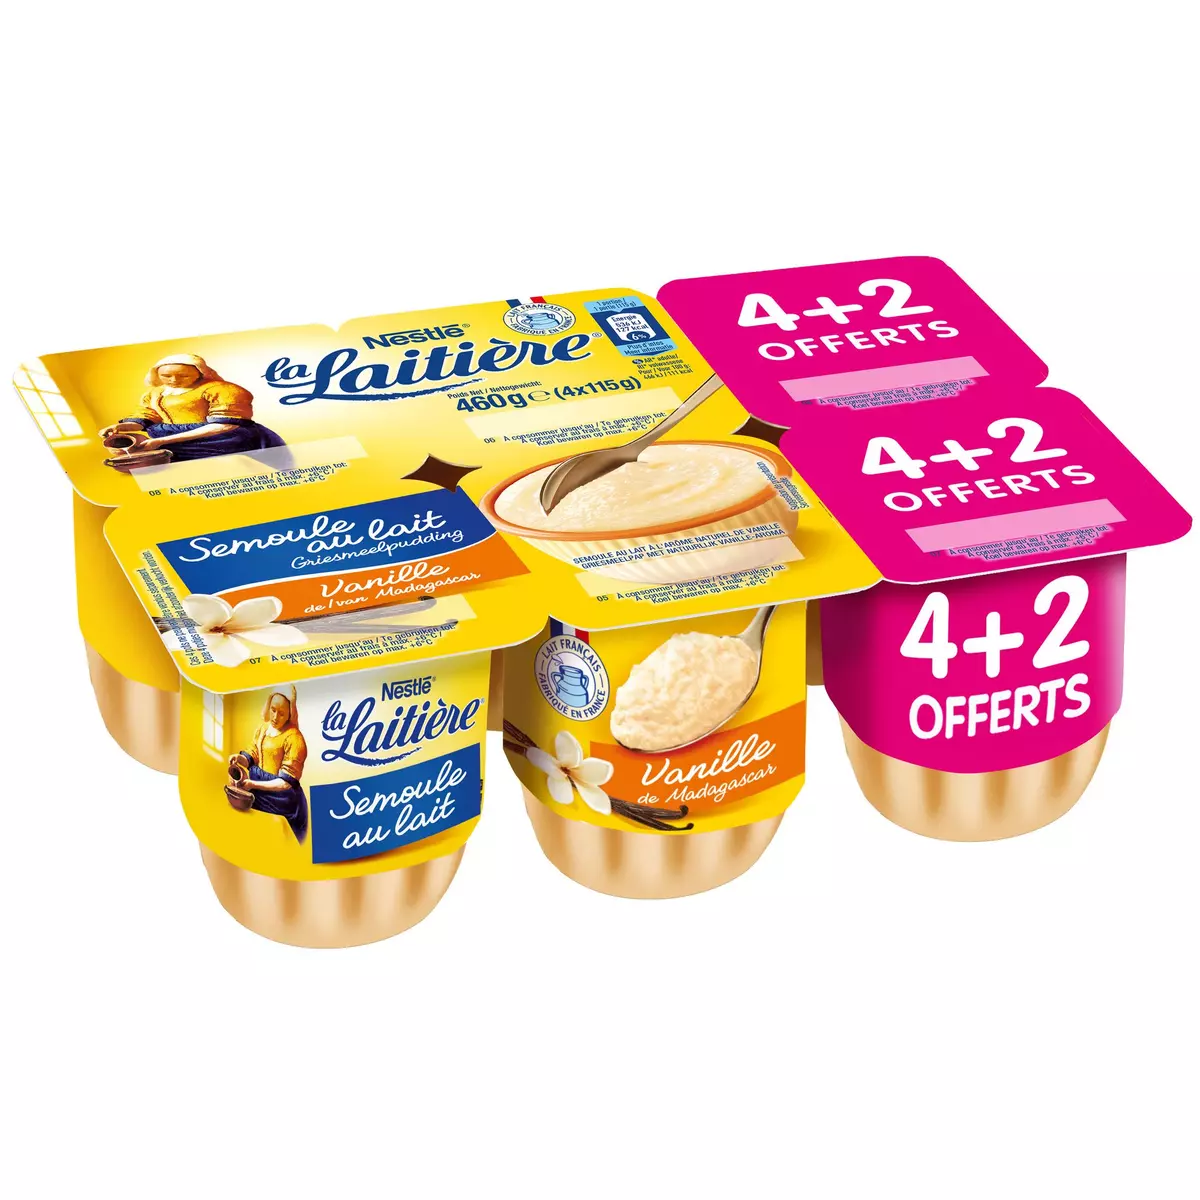 LA LAITIERE Semoule au lait saveur vanille 4 + 2 offerts 6x115g